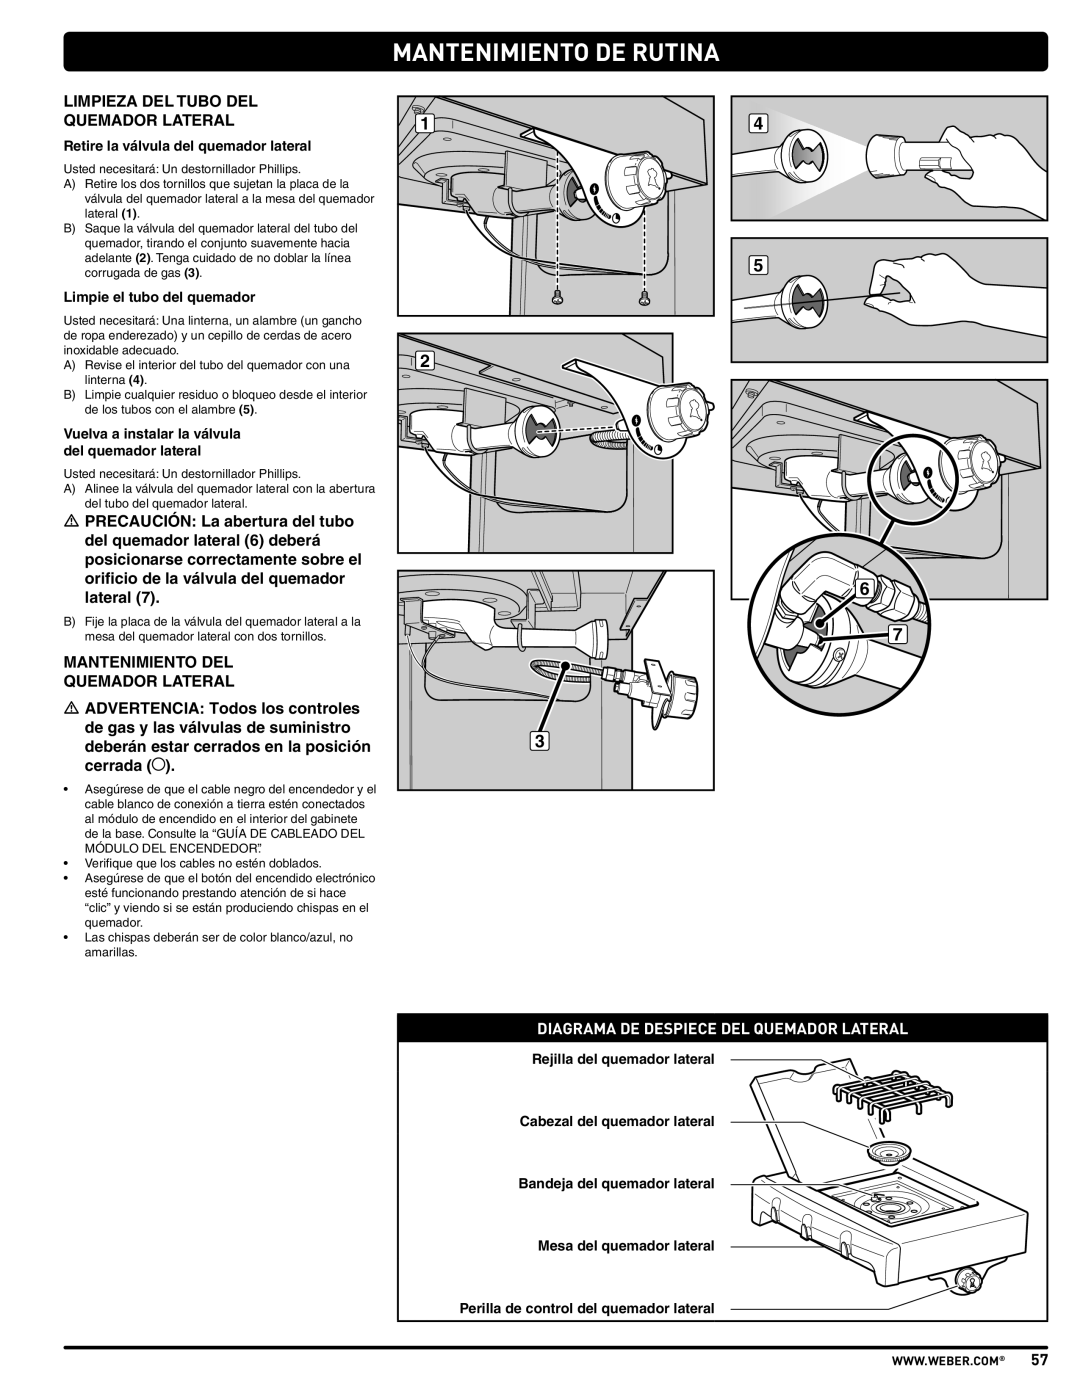 Weber PL - PG. 59 57205 Mantenimiento De Rutina, Diagrama De Despiece Del Quemador Lateral, Limpie el tubo del quemador 